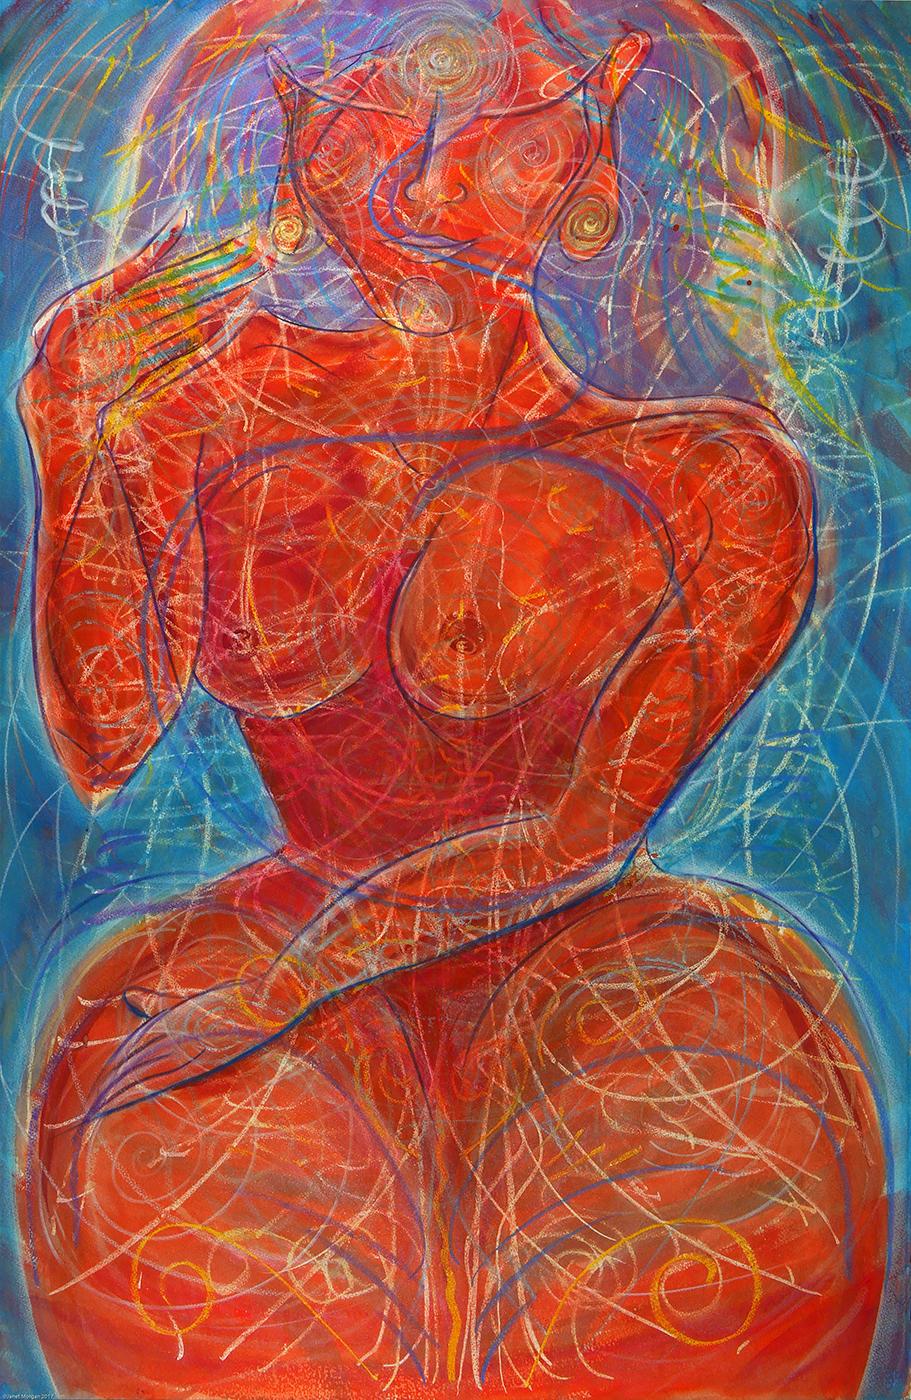 Janet Morgan Nude – Hot Flash, Figur, rote Farben, leuchtende, wirbelnde Muster